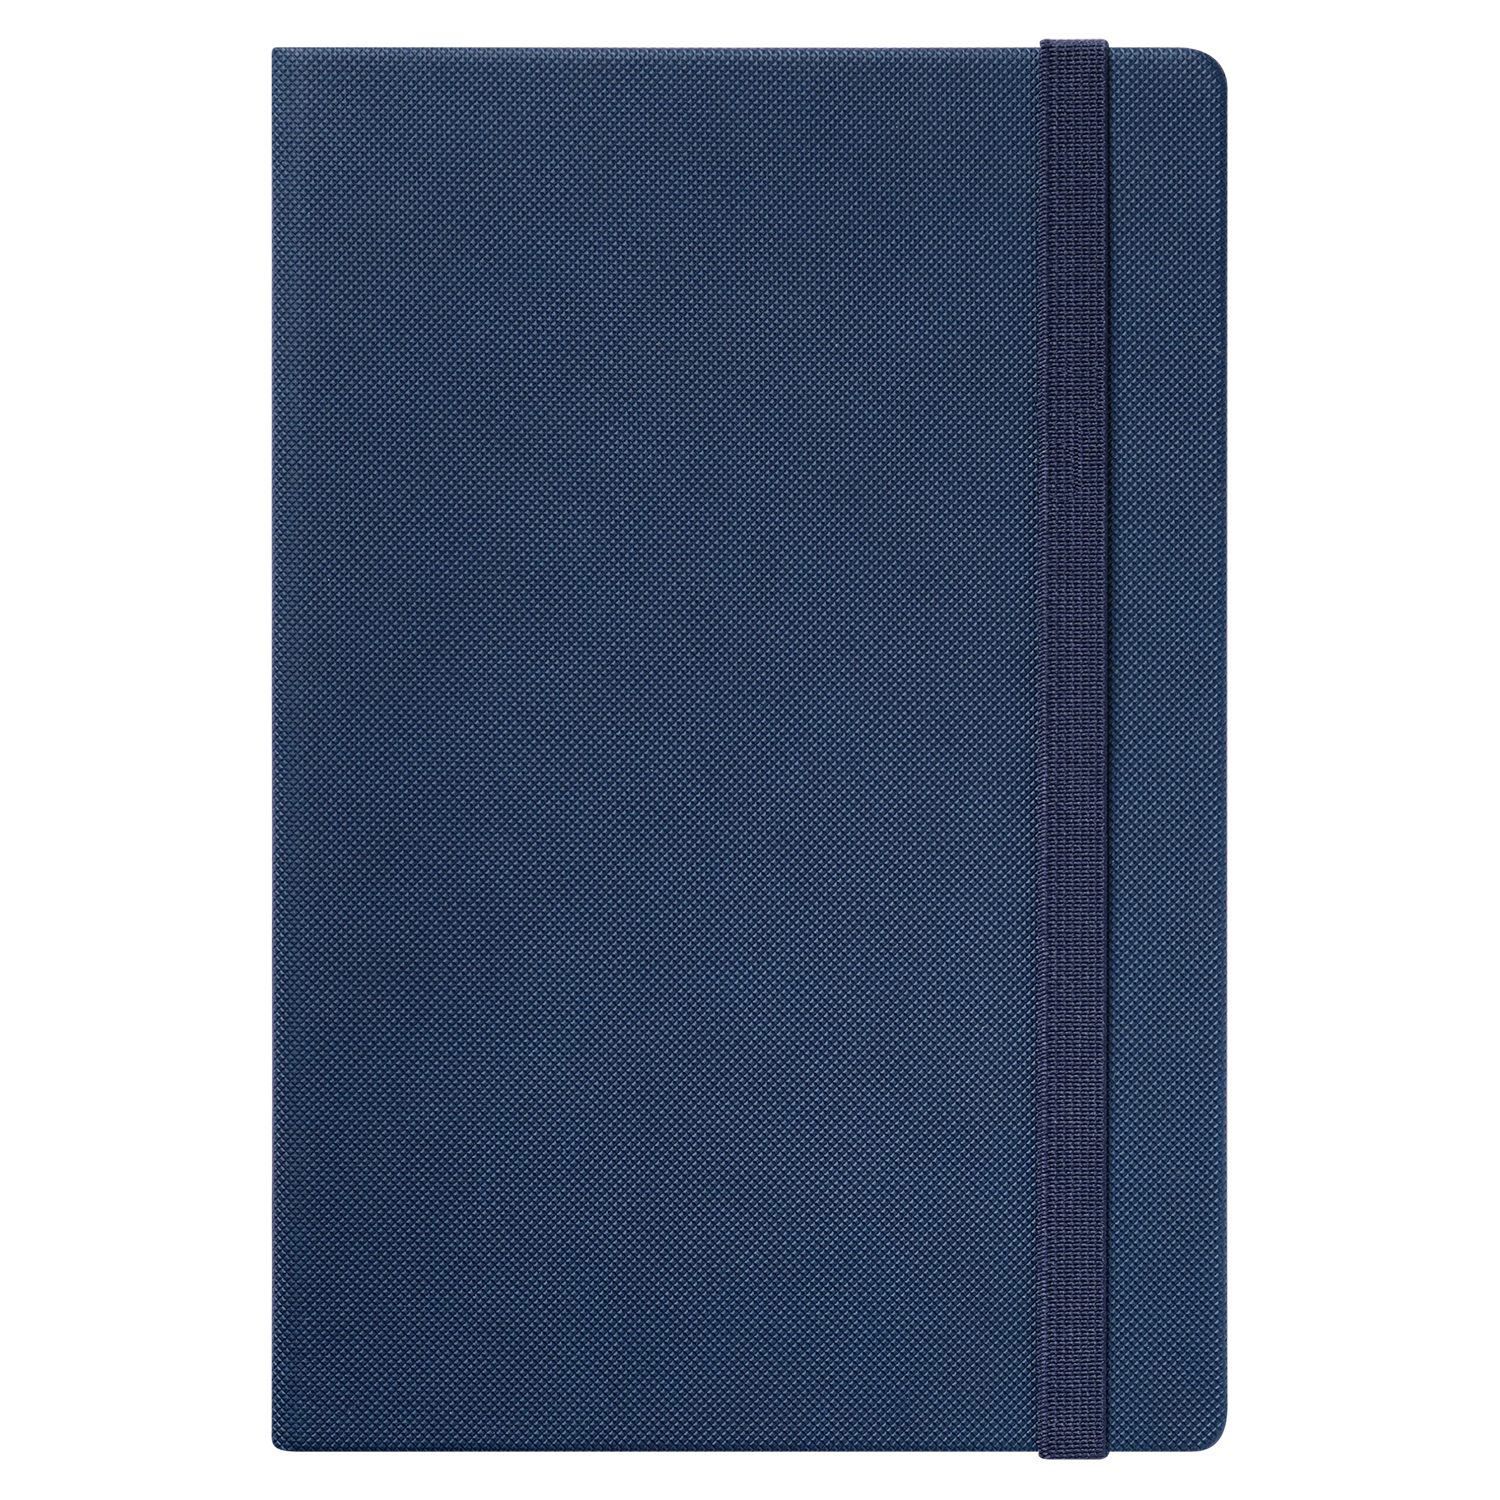 Ежедневник Canyon Btobook недатированный, синий (без упаковки, без стикера)